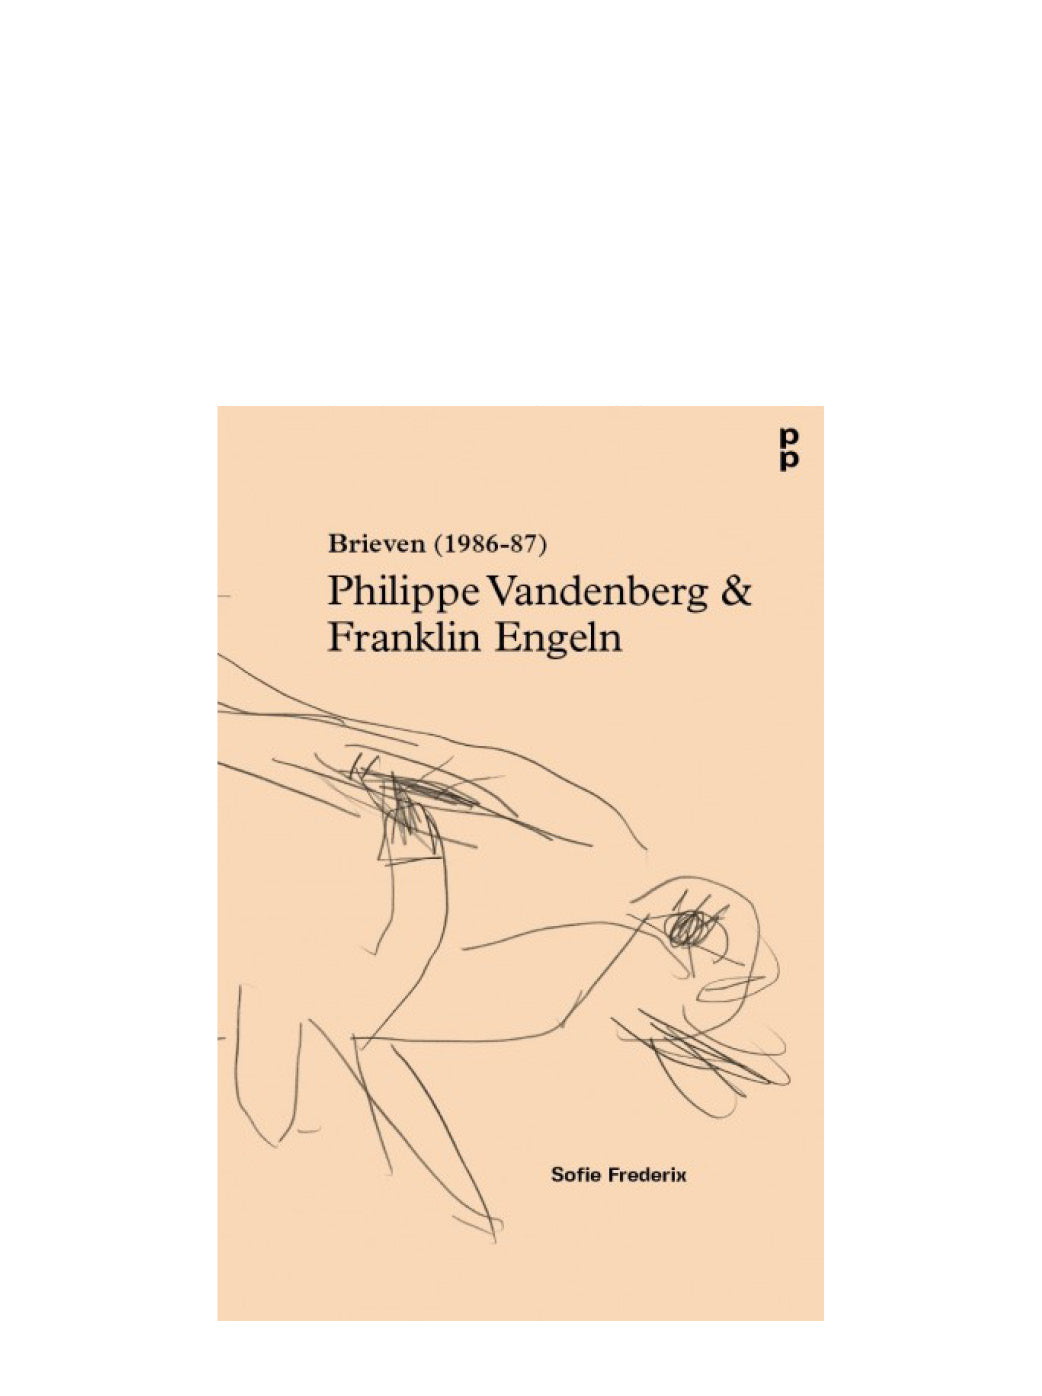 Philippe Vandenberg & Franklin Engeln ‘Brieven (1986-87)’